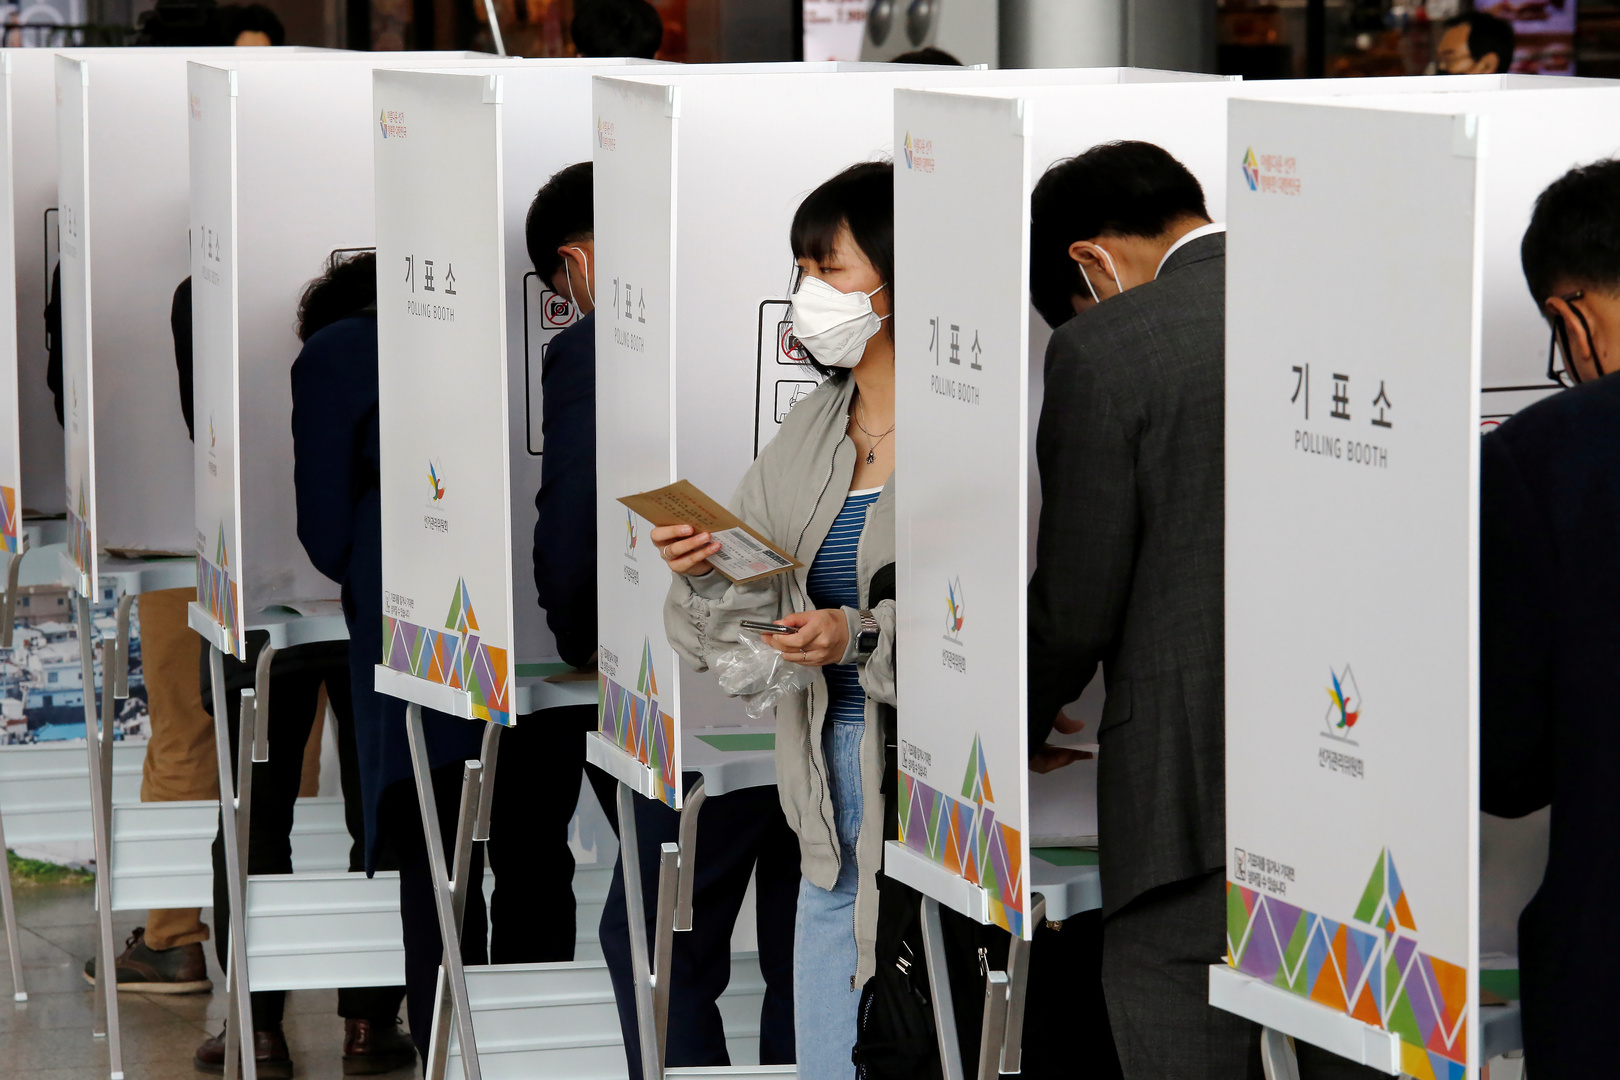 كوريا الجنوبية تجري انتخابات عامة رغم انتشار فايروس “كورونا”